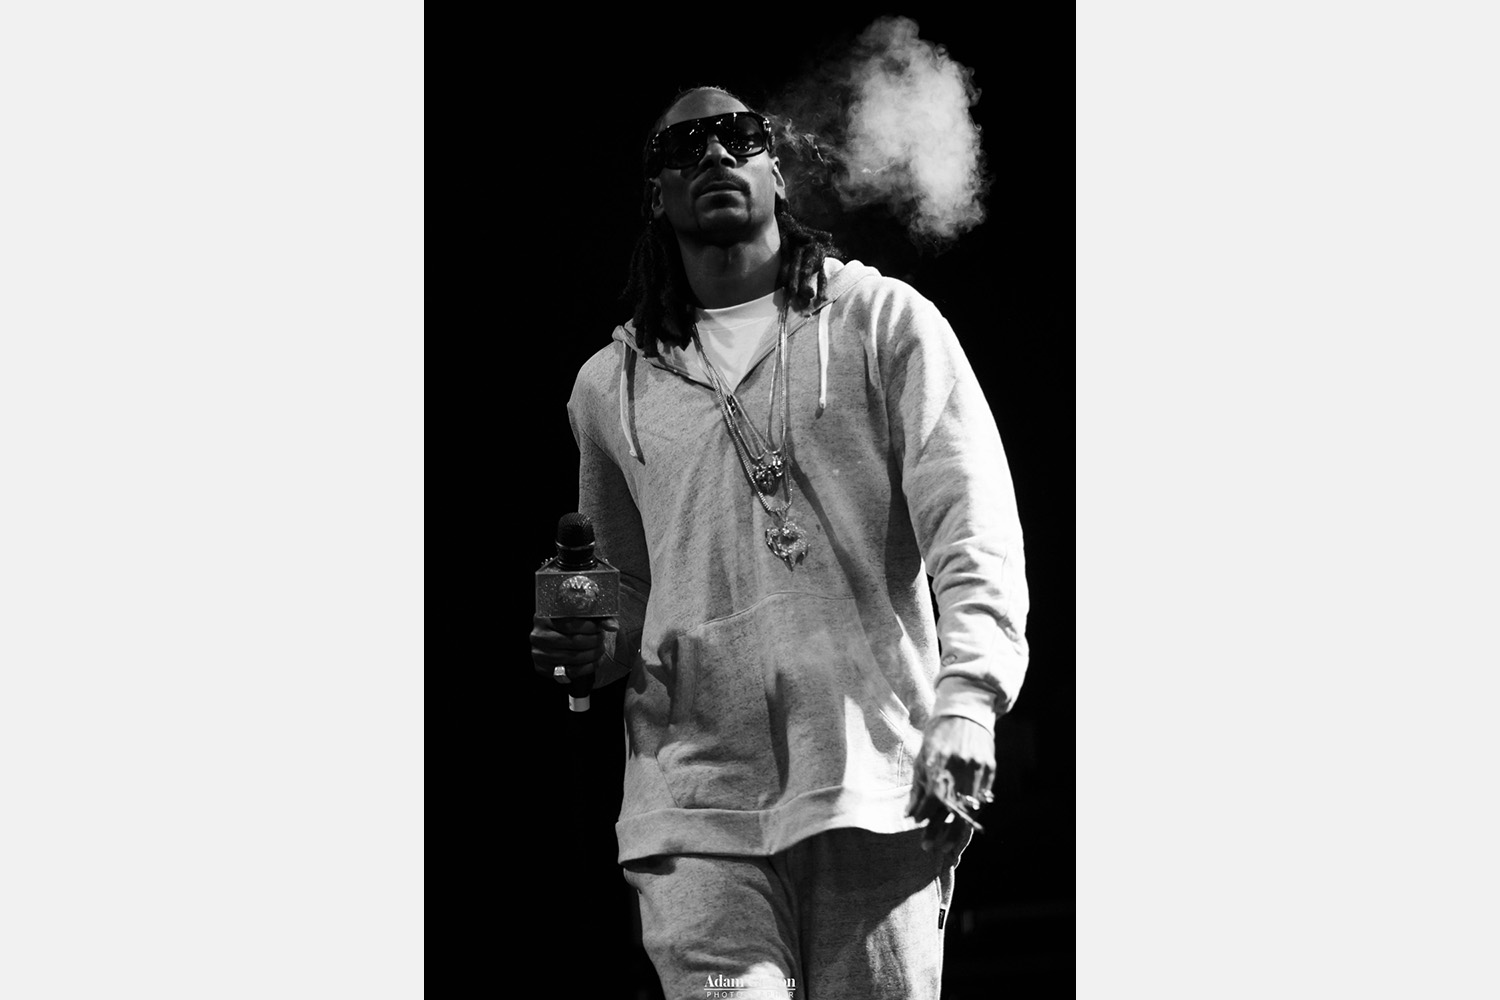 Snoop Dogg live photos